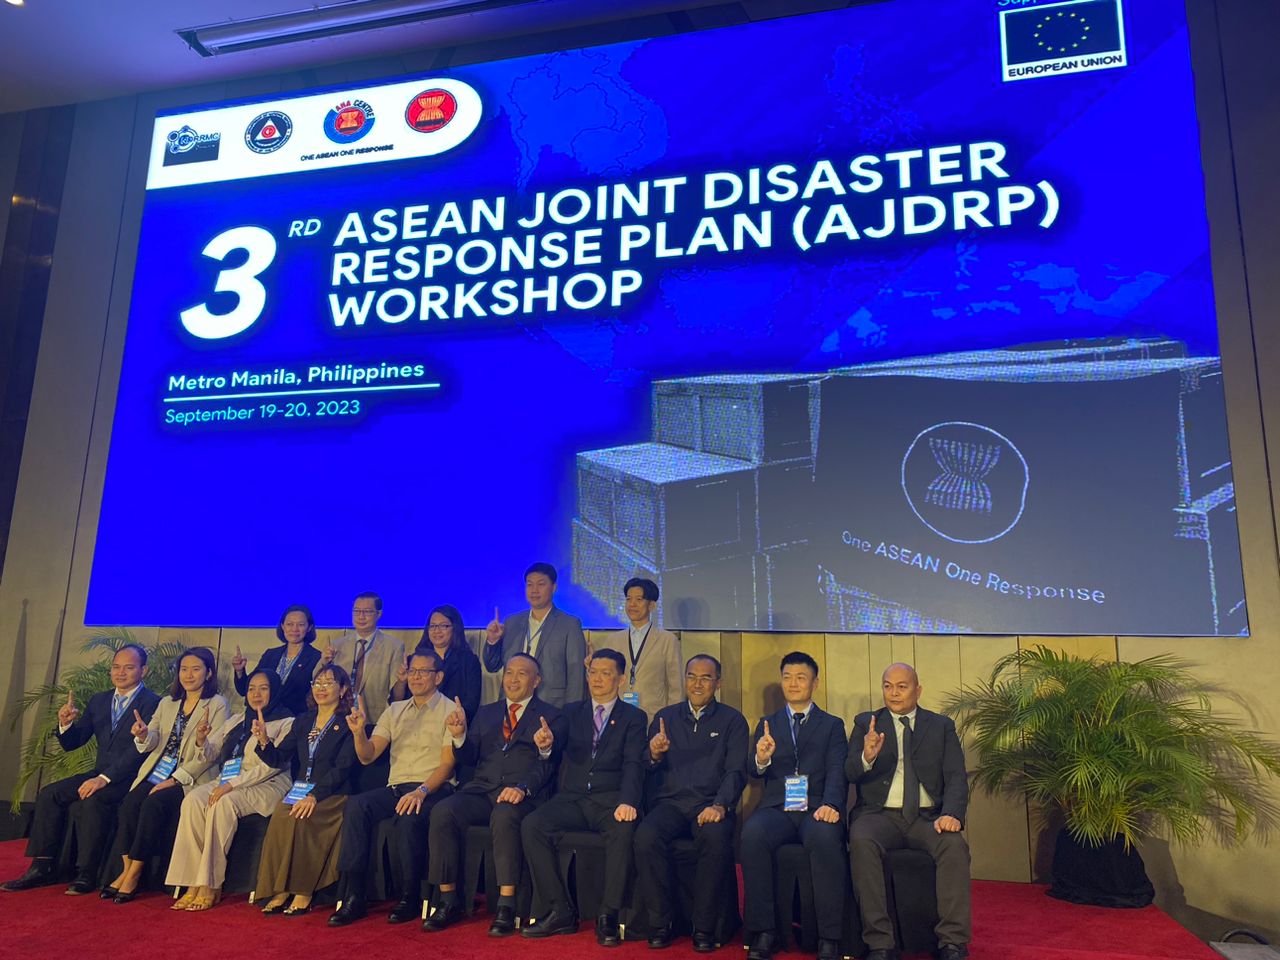 3RD ASEAN JOINT DISASTER RESPONSE PLAN (AJDRP) WORKSHOP